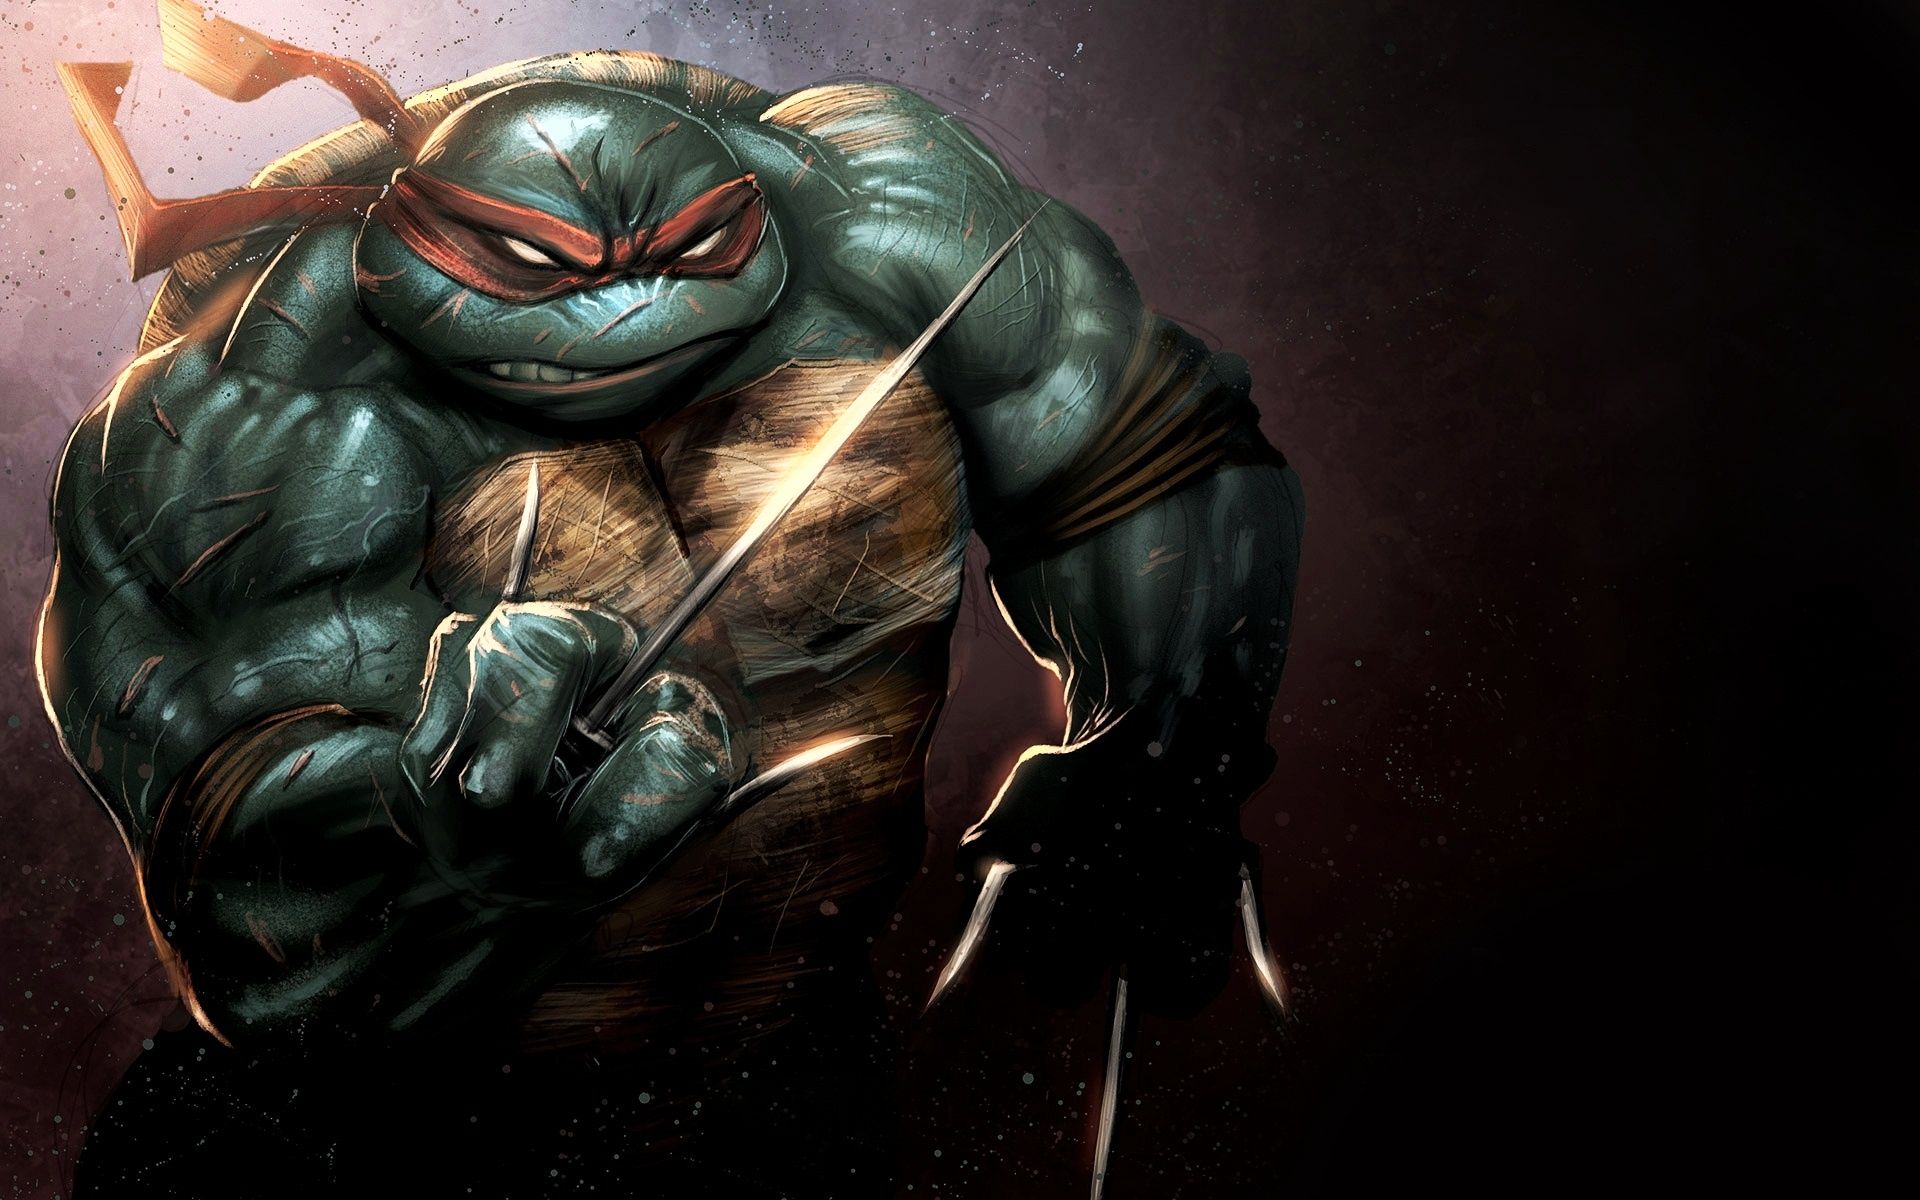 Raphael Teenage Mutant Ninja Turtles Wallpaper in jpg format for free download